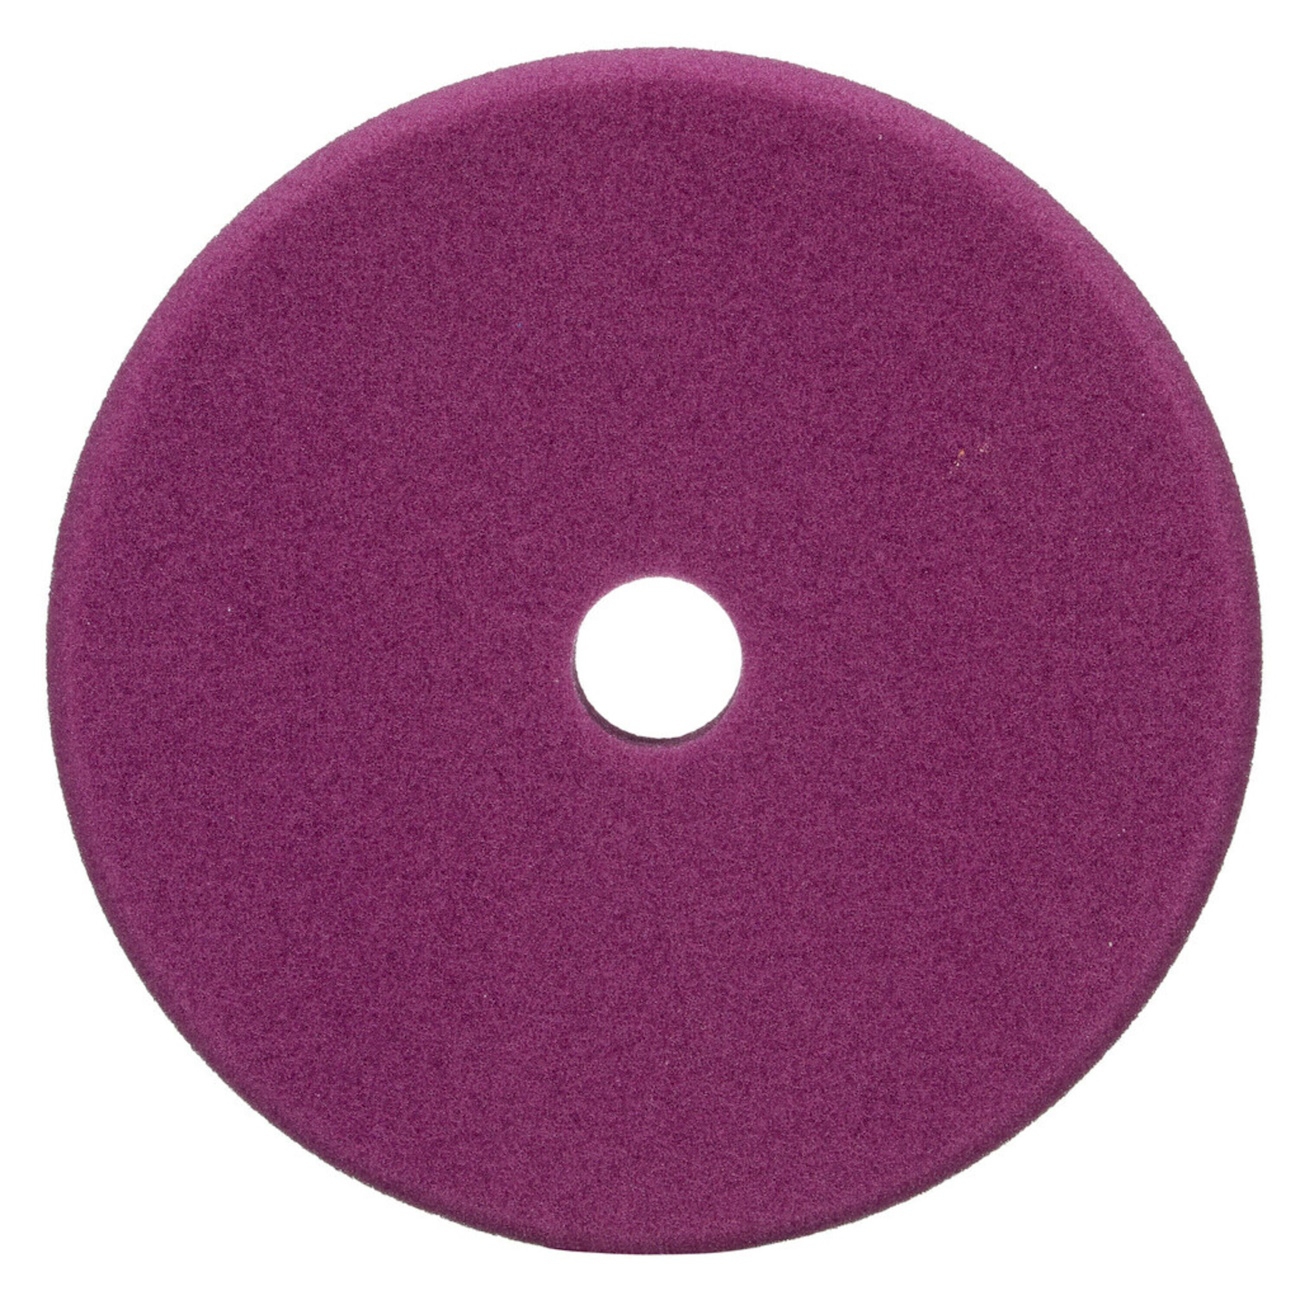 3M Perfect-it hieno vaahtomuovinen kiillotuslaikka eksentriseen kiillotuskoneeseen, violetti, 150 mm, 34127 (Pakkaus=2 kpl)